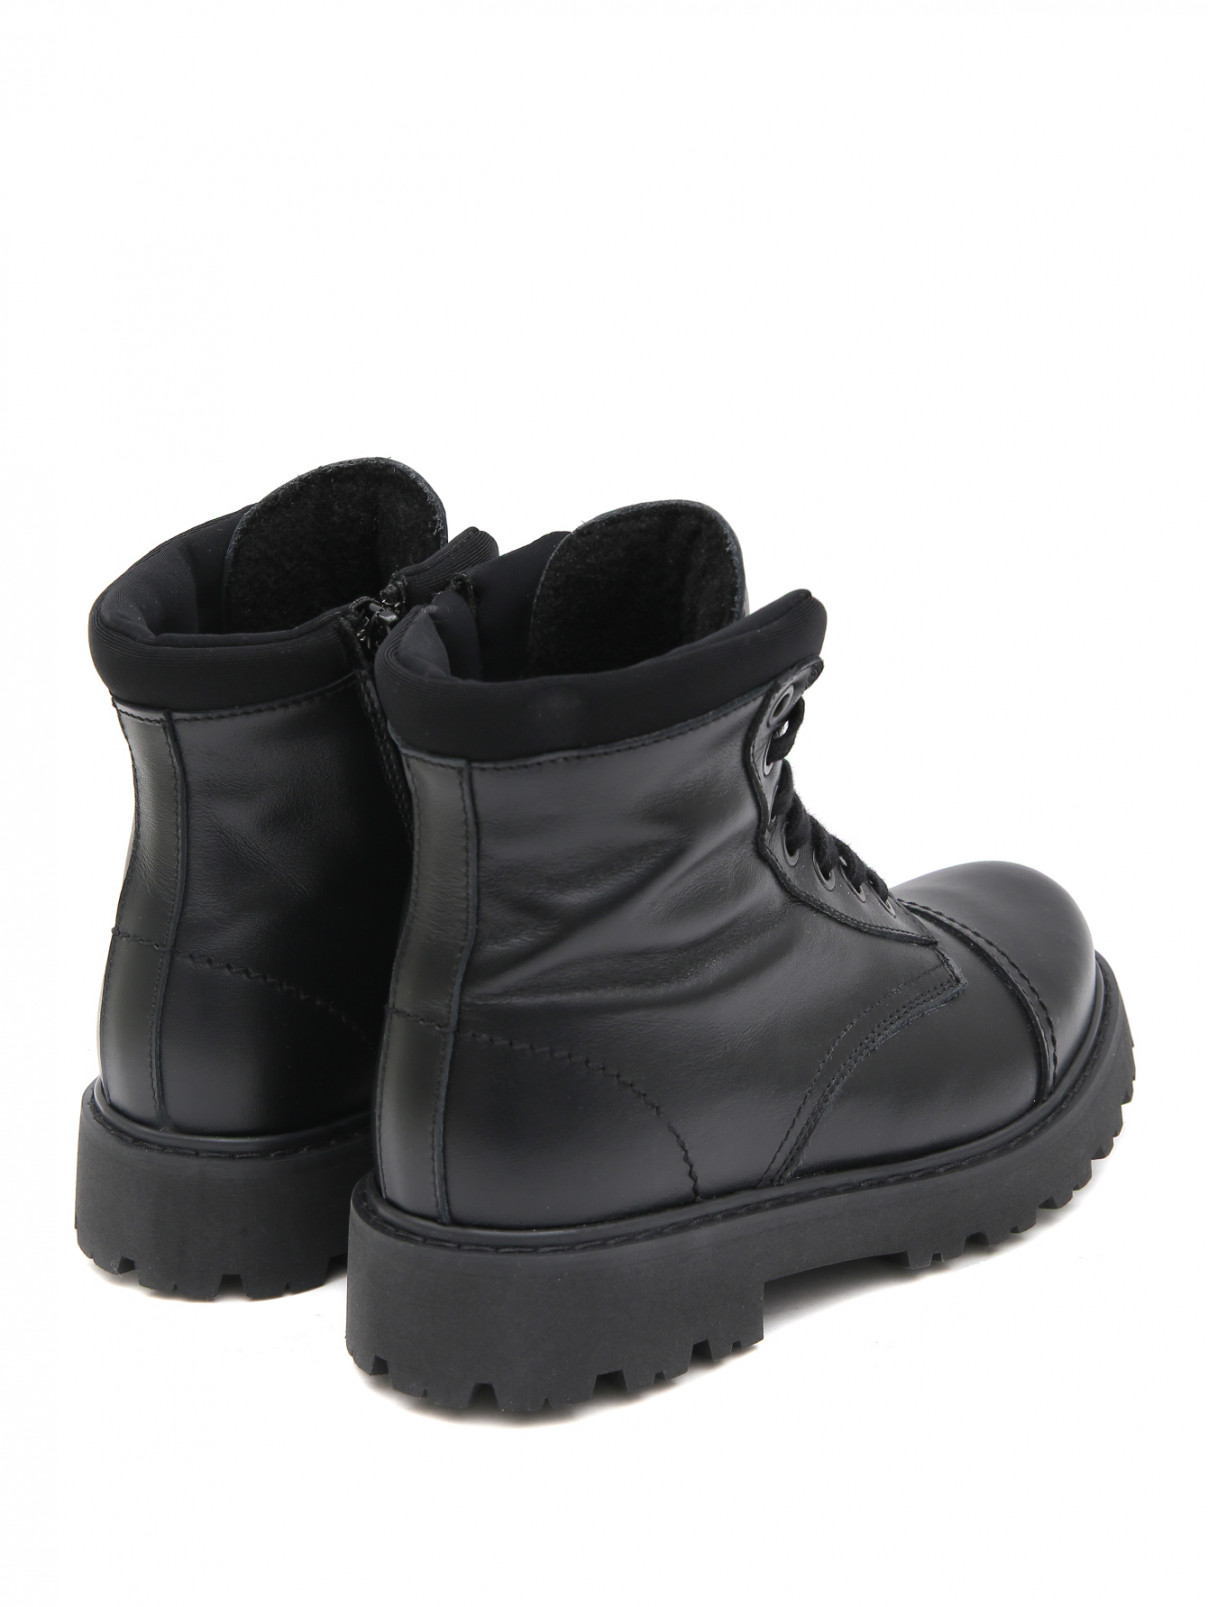 Высокие ботинки на шнуровке MONTELPARE TRADITION  –  Обтравка2  – Цвет:  Черный